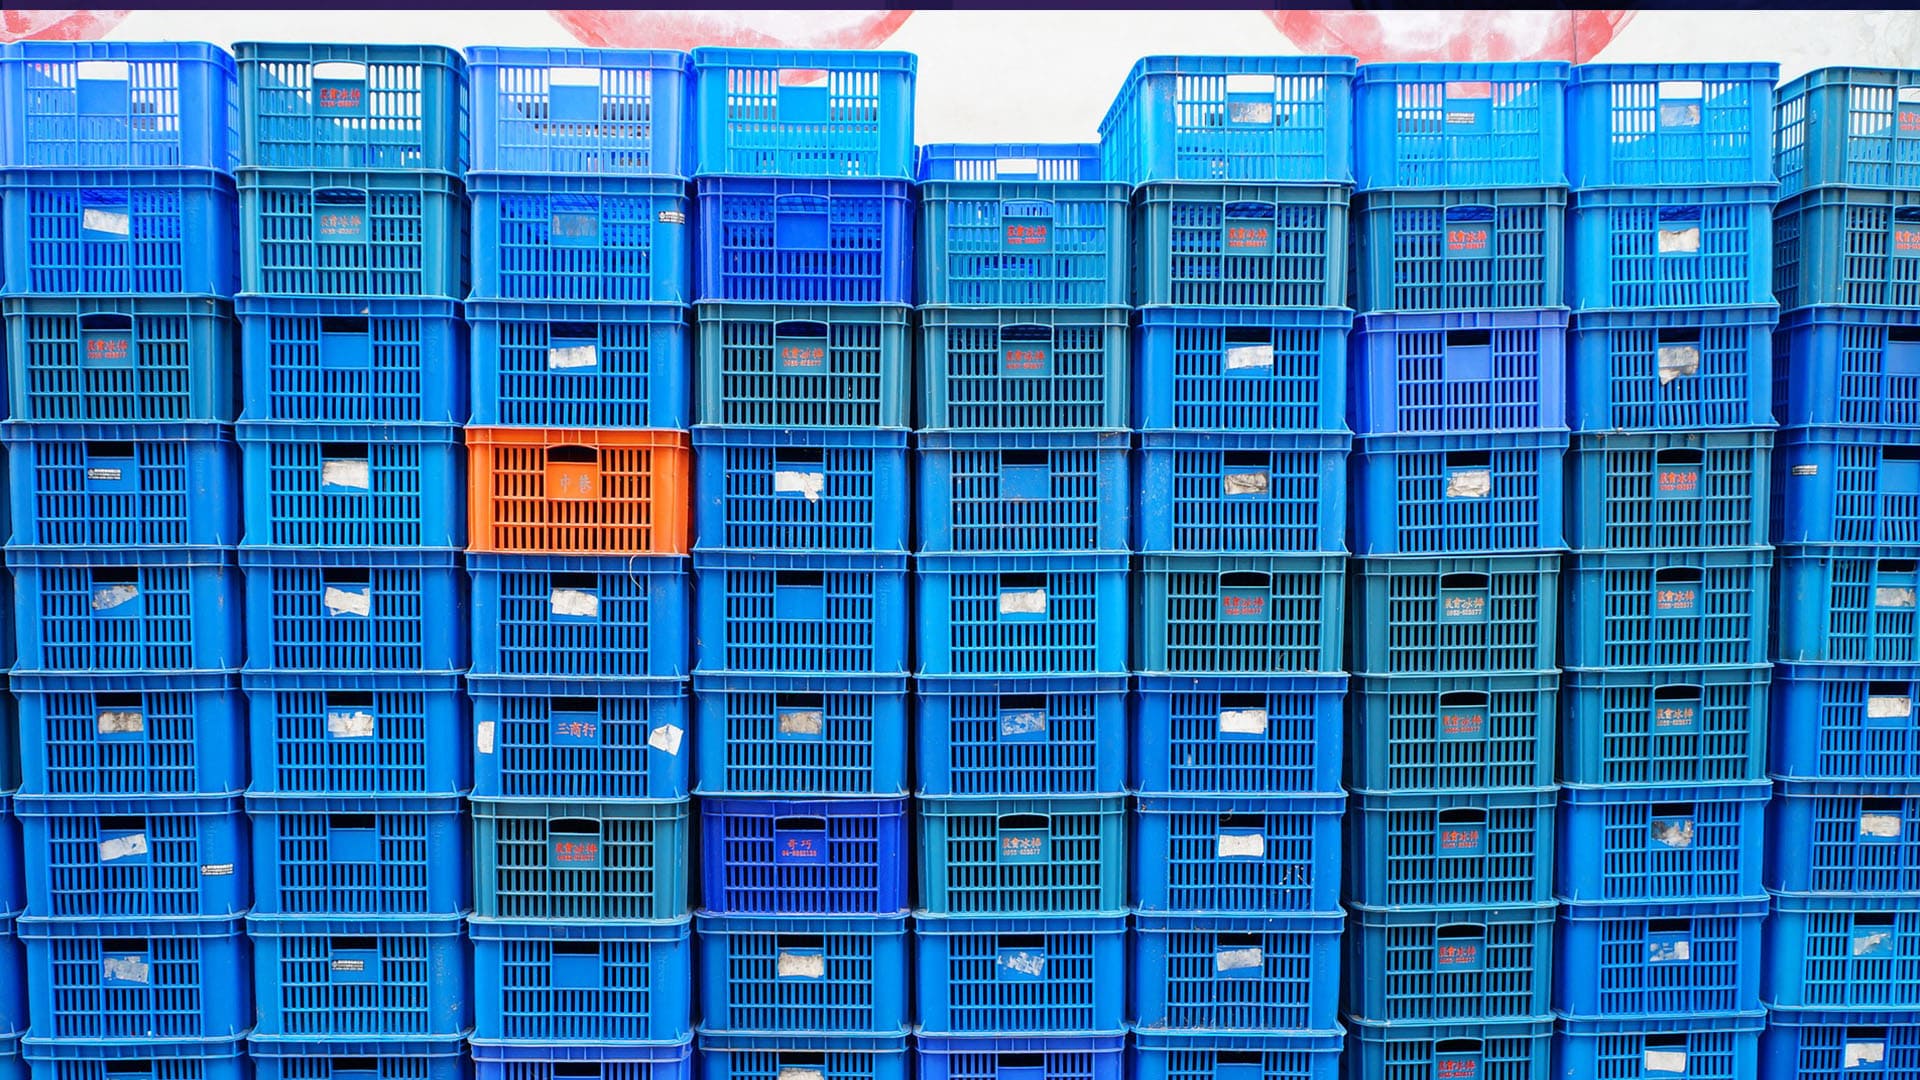 Caixas azuis empilhadas, uma em laranja se destaca